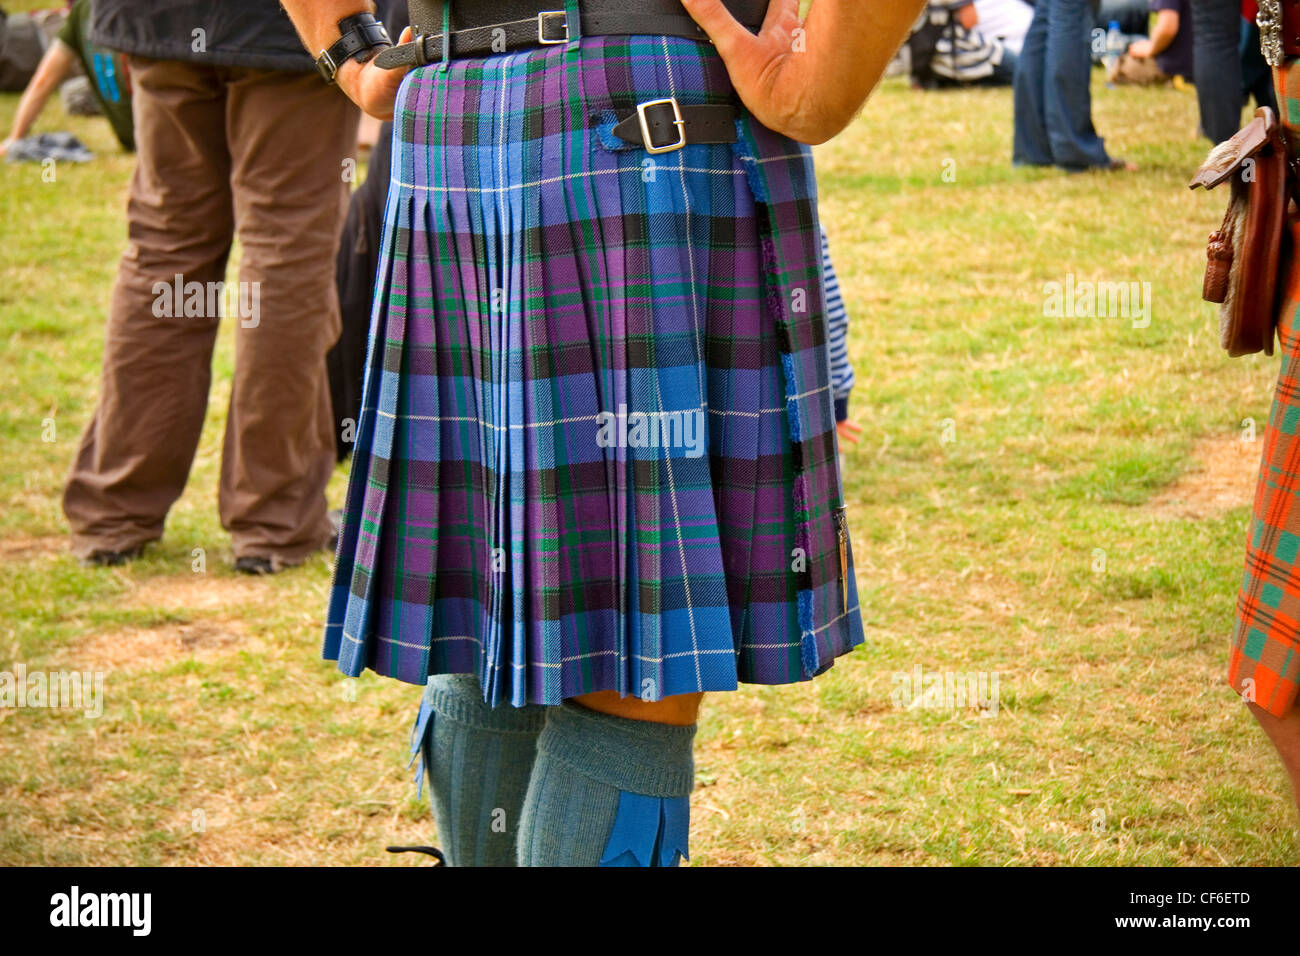 Vue arrière d'un homme vêtu d'un kilt écossais traditionnel. Banque D'Images